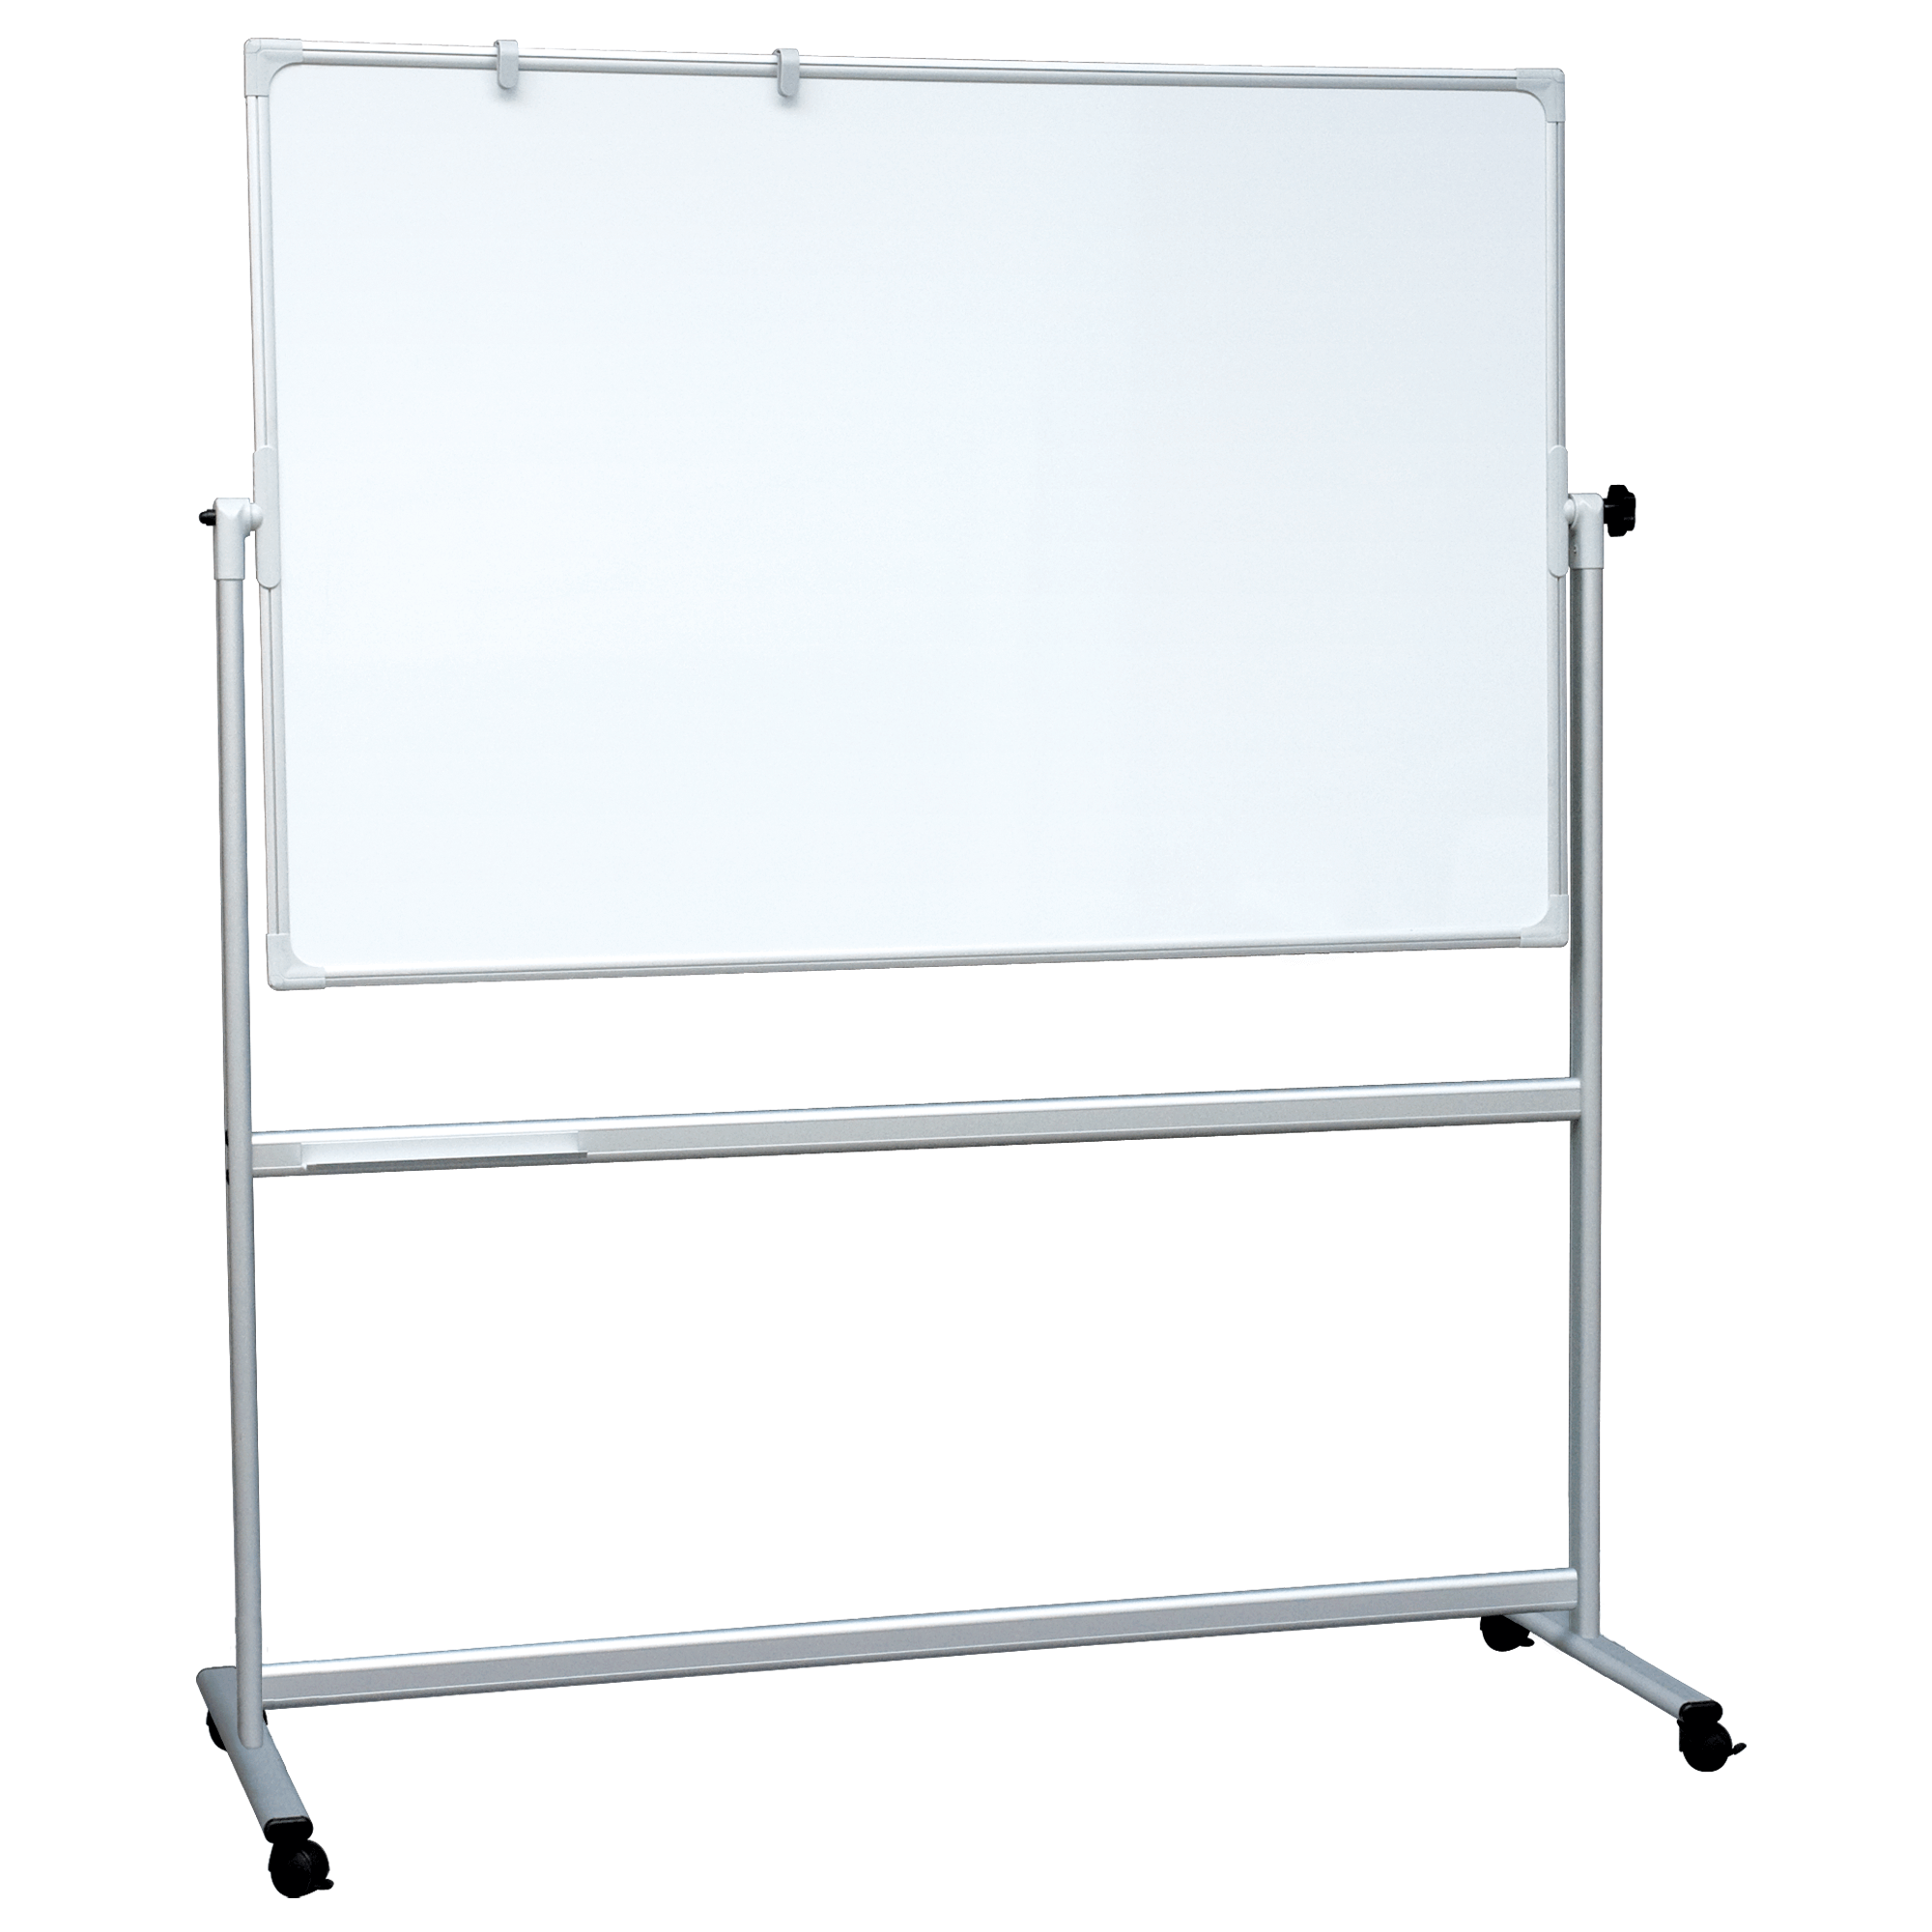 Dobbeltsidet mobil whiteboard tavle 180 x 120 cm.